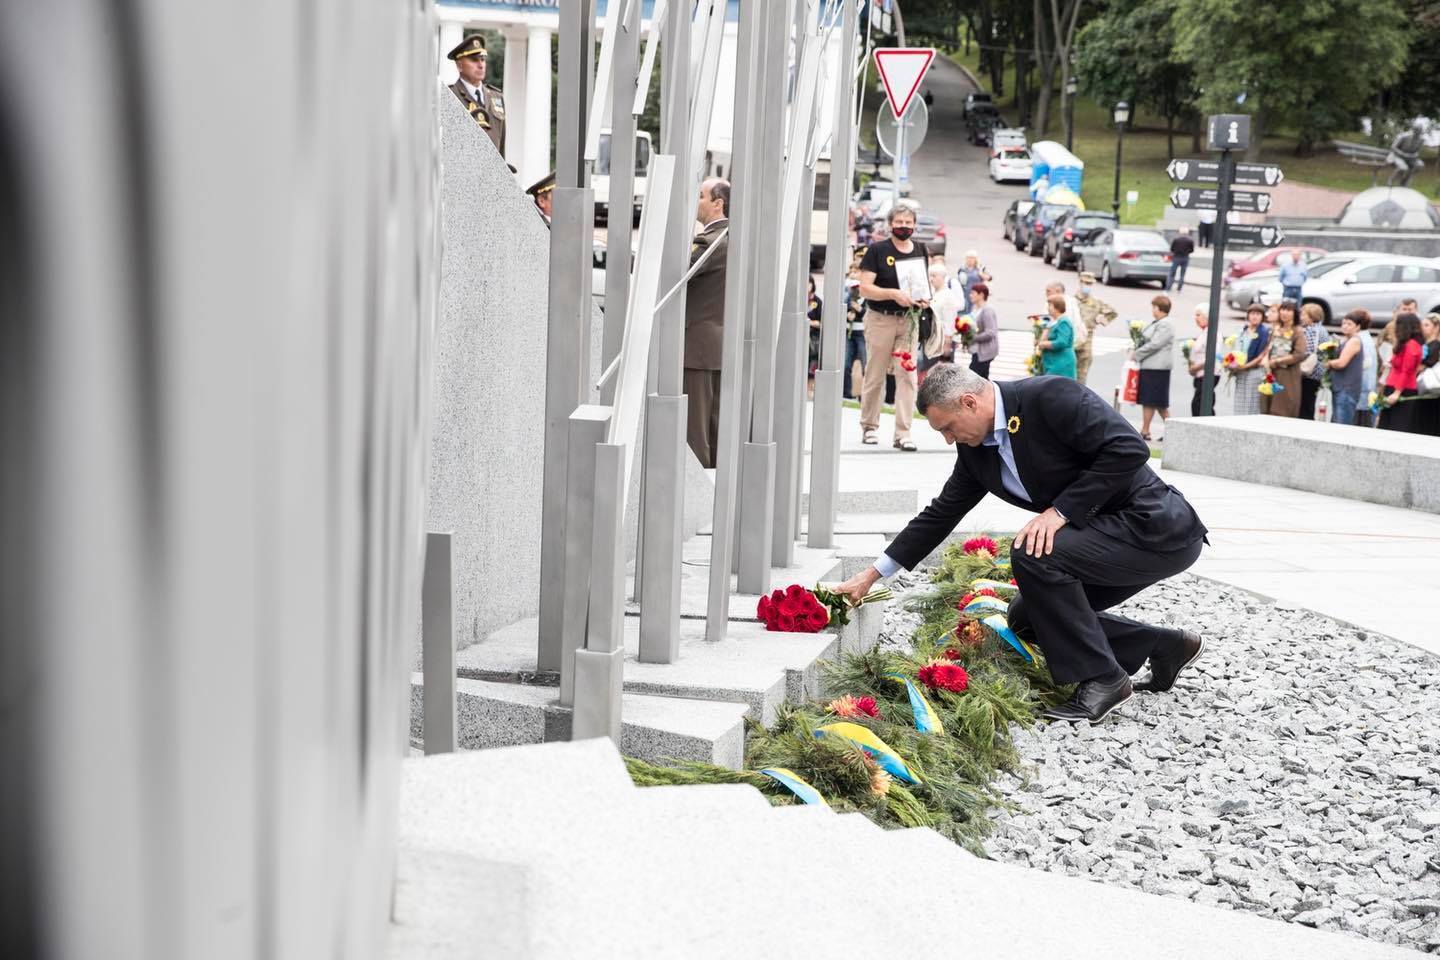 Кличко открыл в столице Мемориал памяти погибшим киевлянам-участникам АТО/ООС. Фото